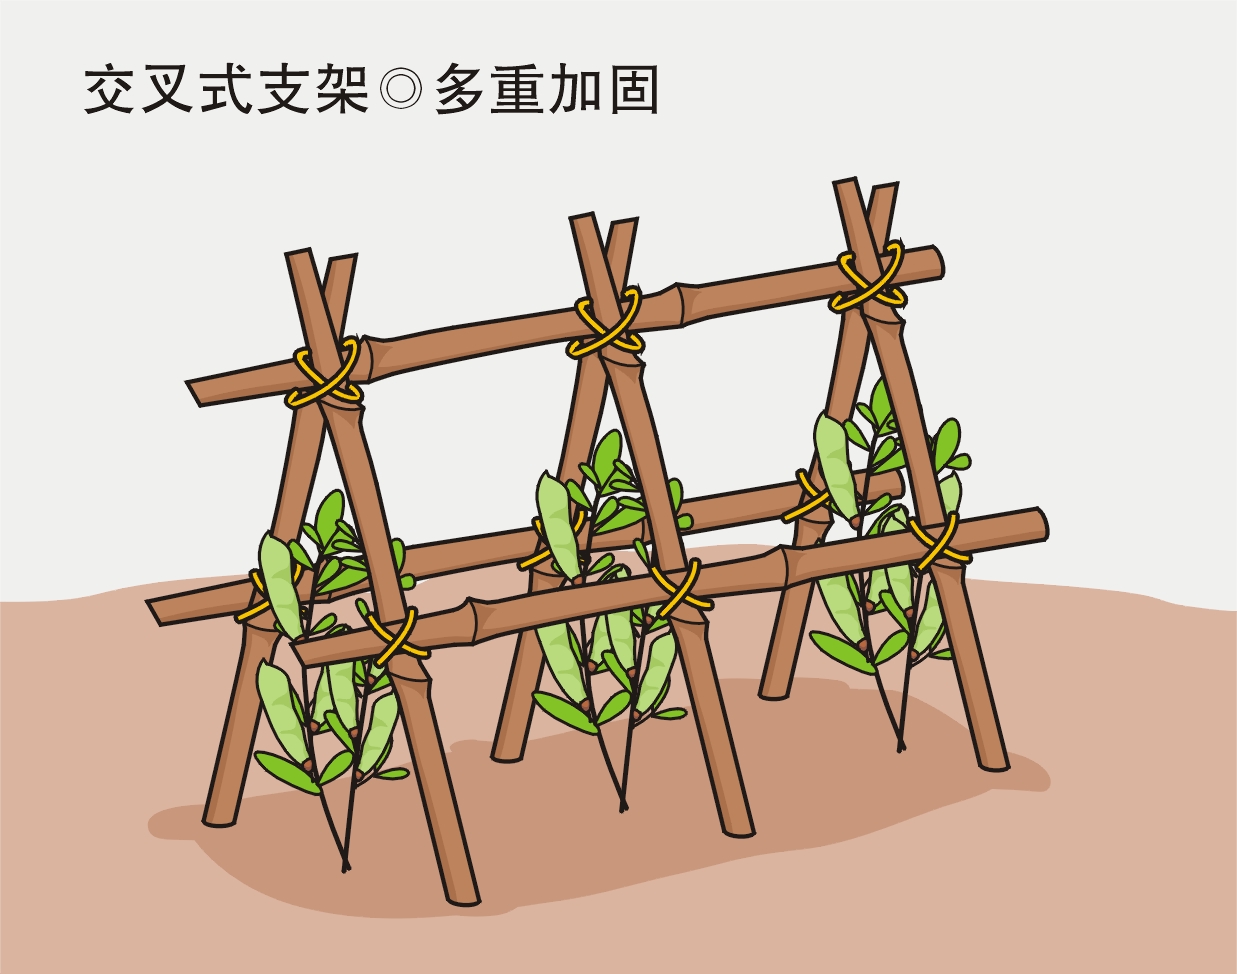 农业劳动实践活动：给喜欢爬藤的蔬菜作物搭立生长支架？